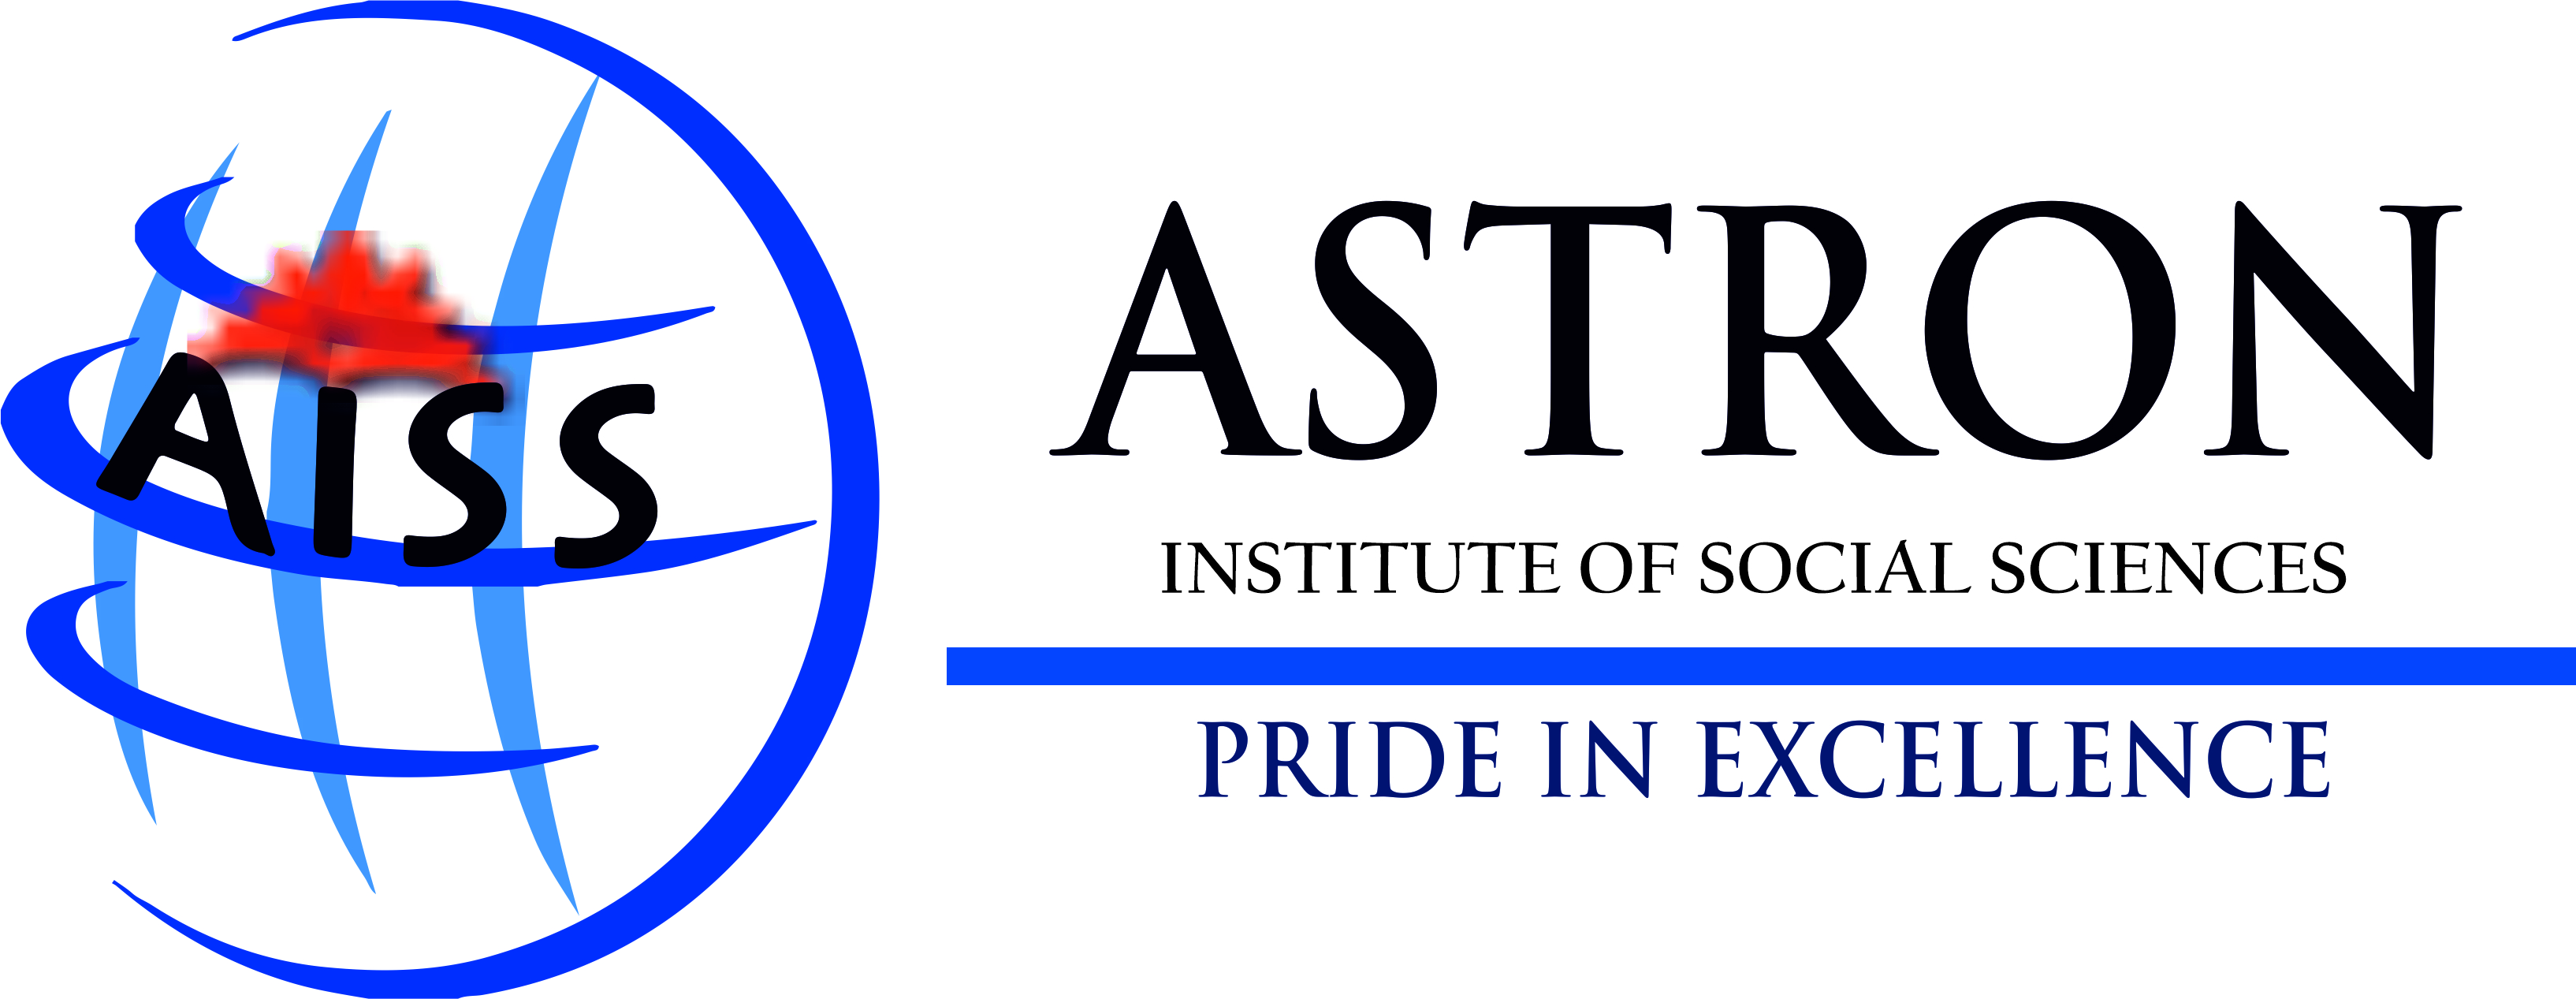 Astron Institute of Social Sciences